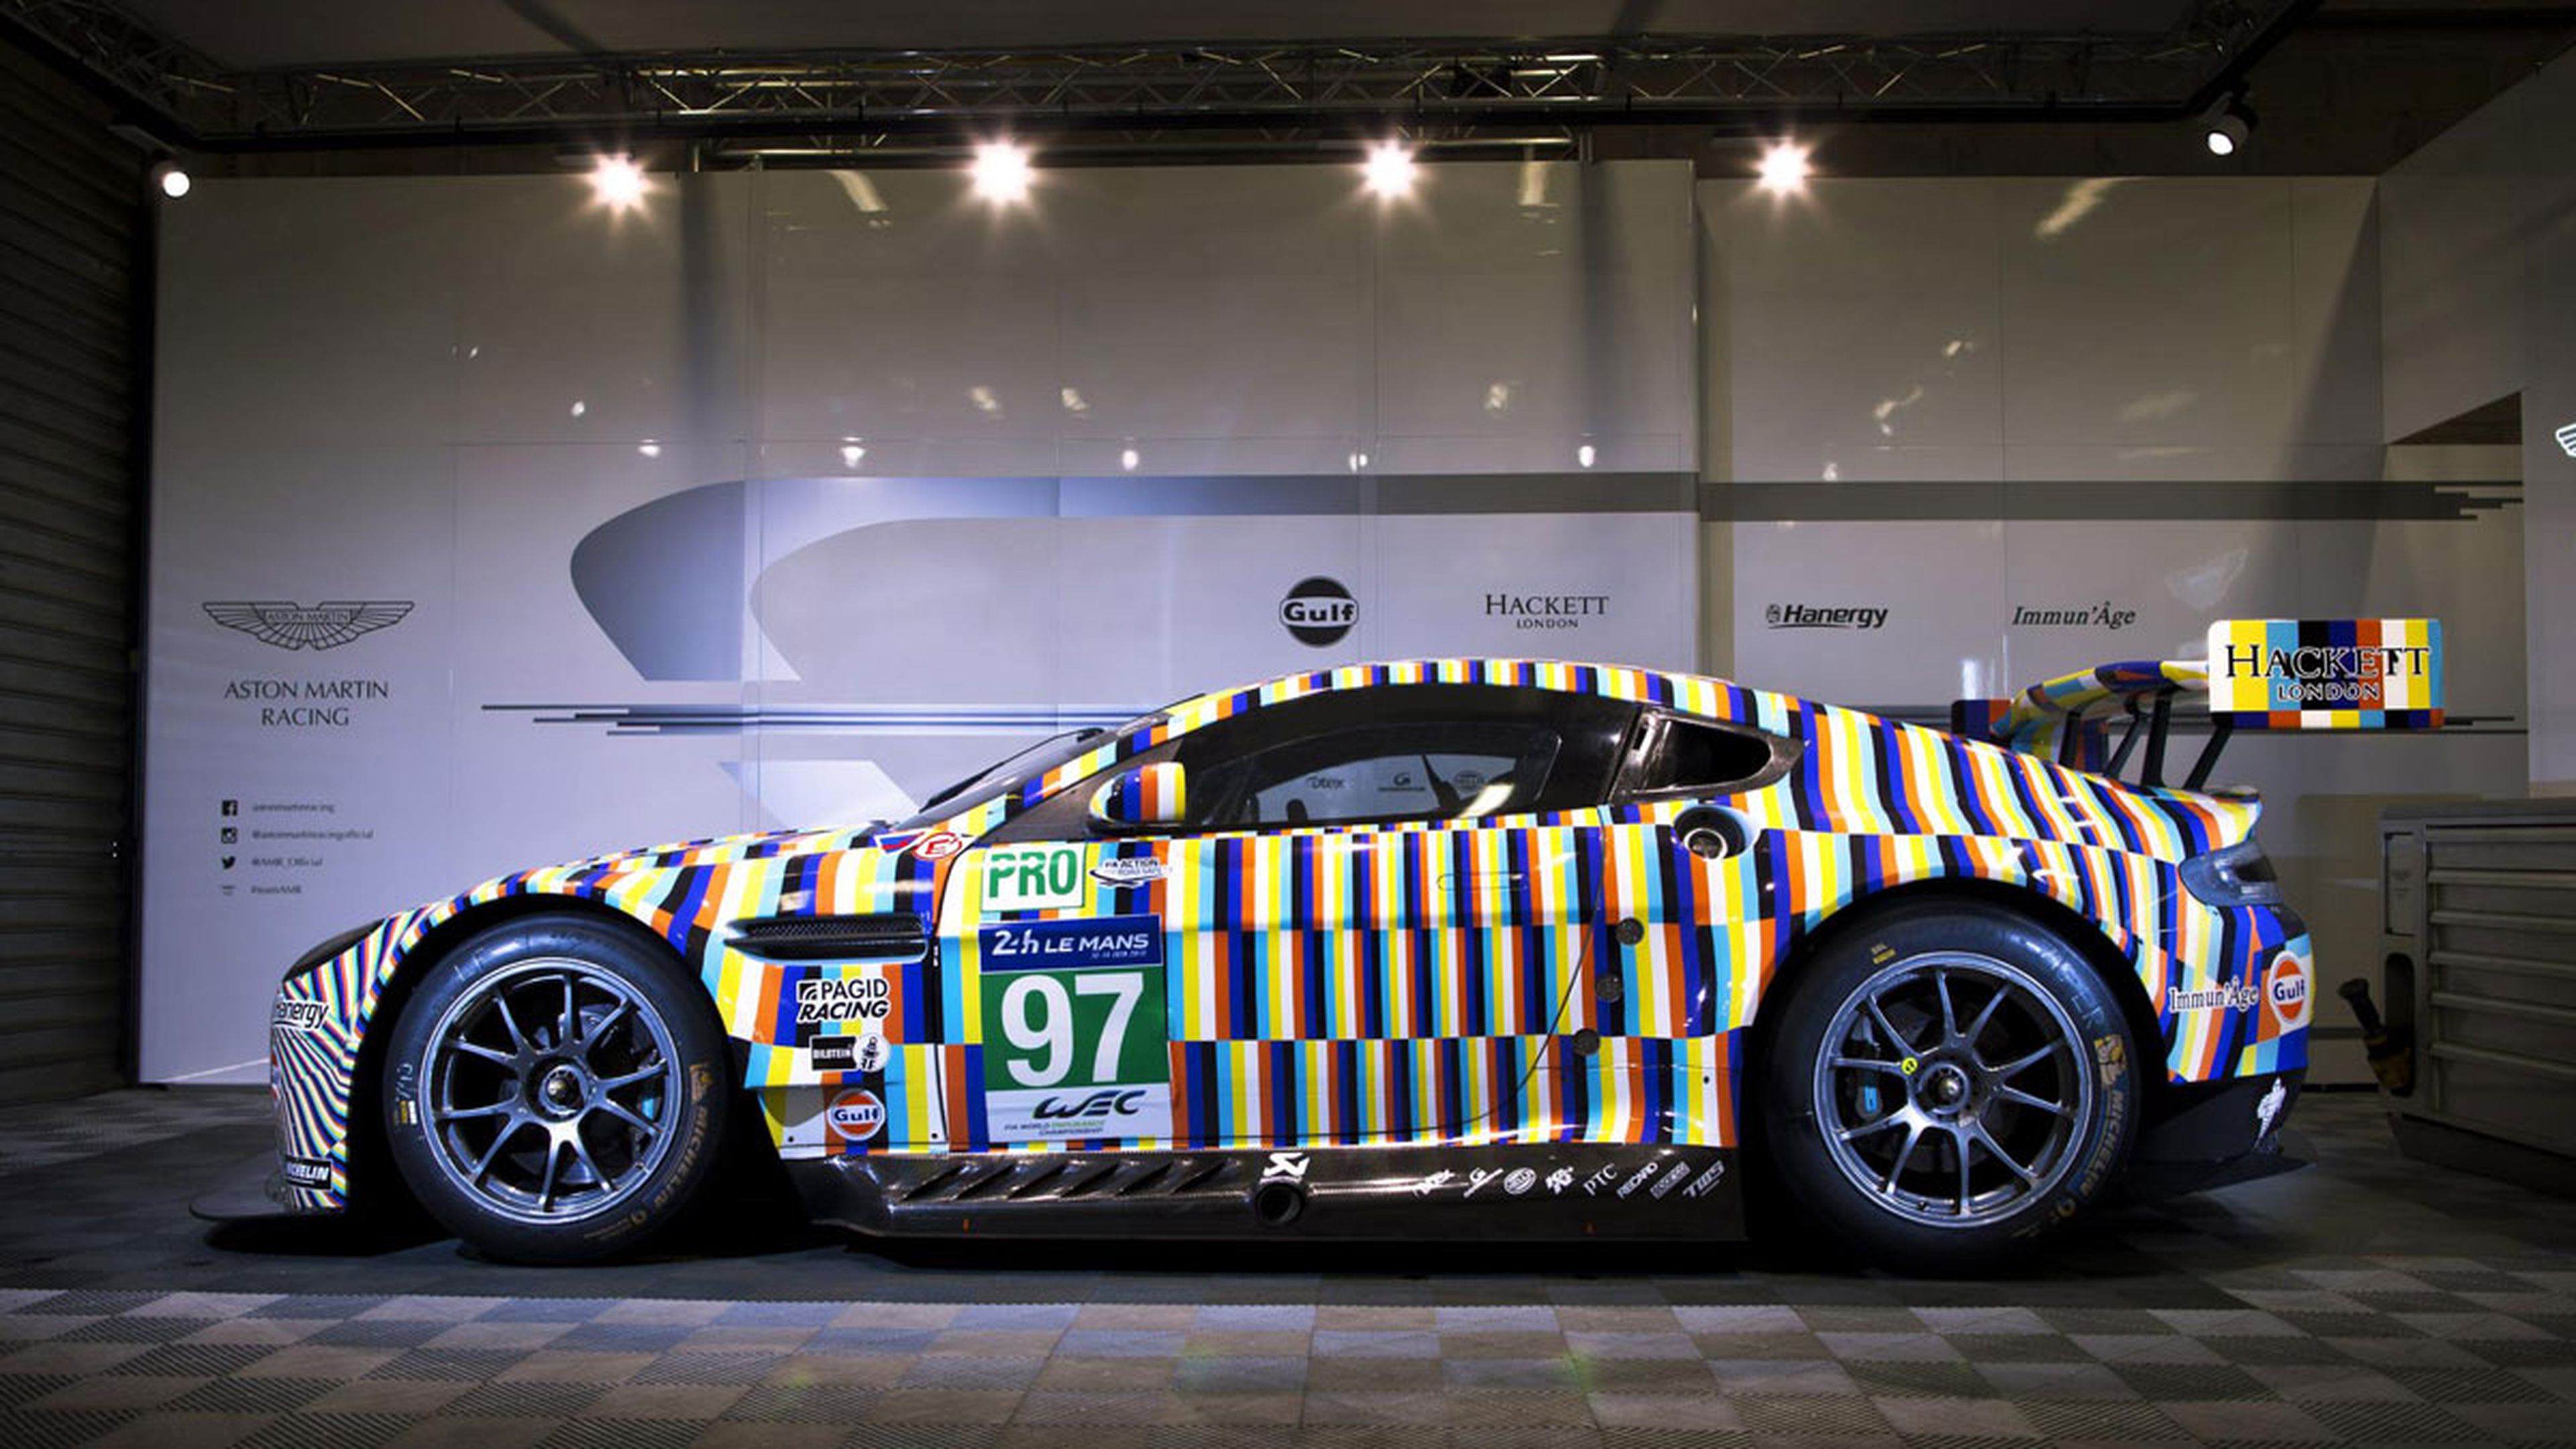 Aston Martin Le Mans multicolor